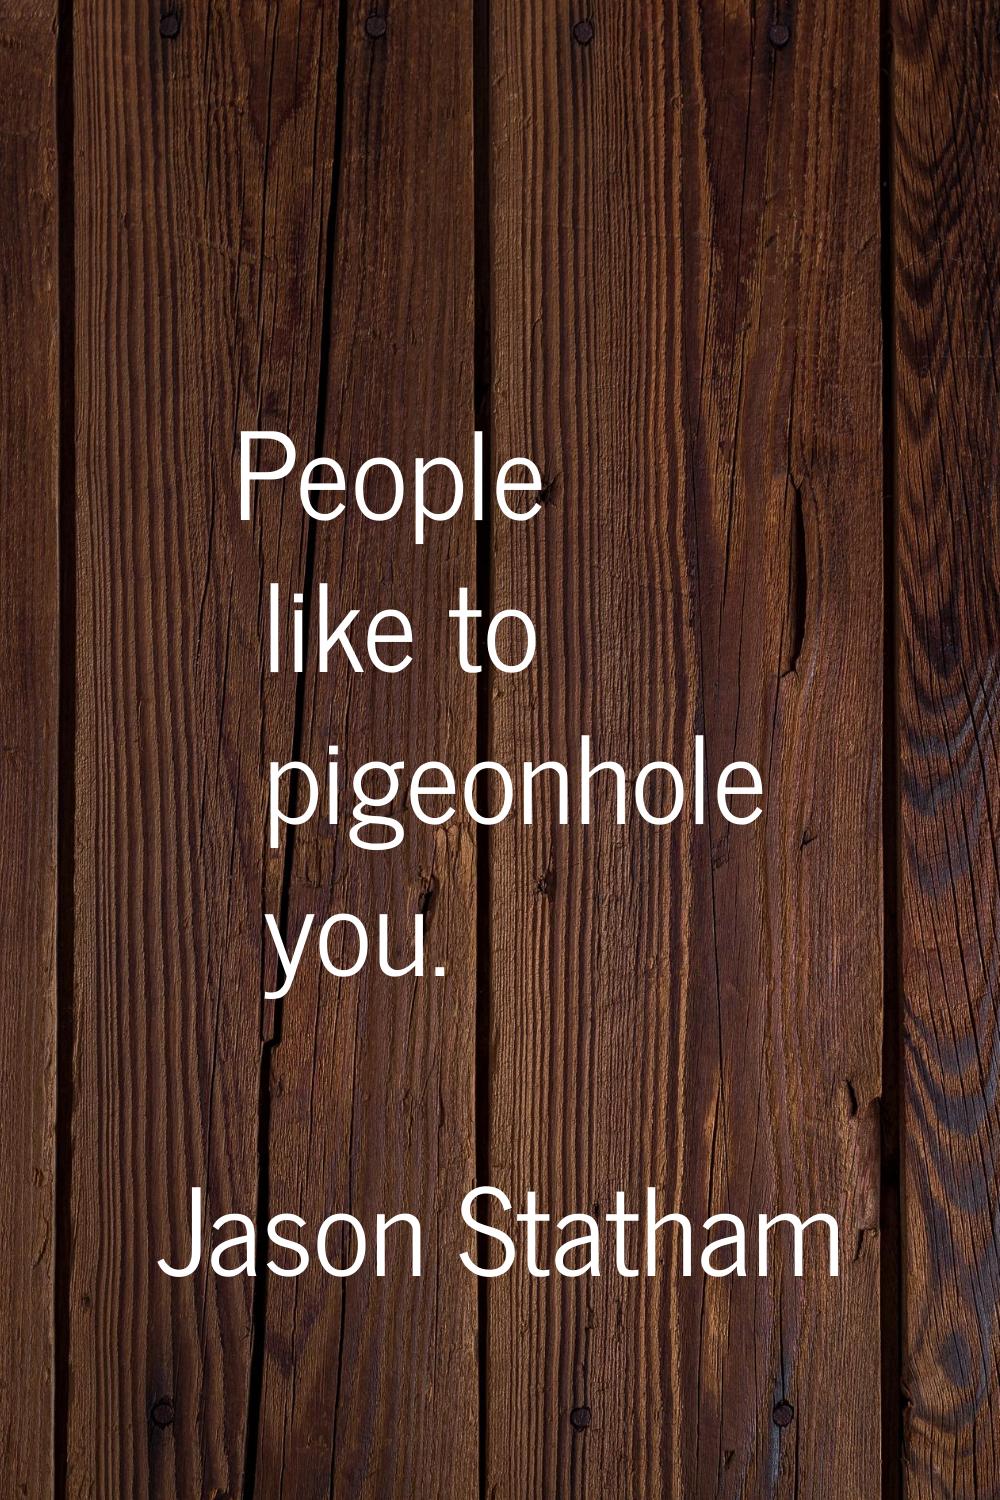 People like to pigeonhole you.